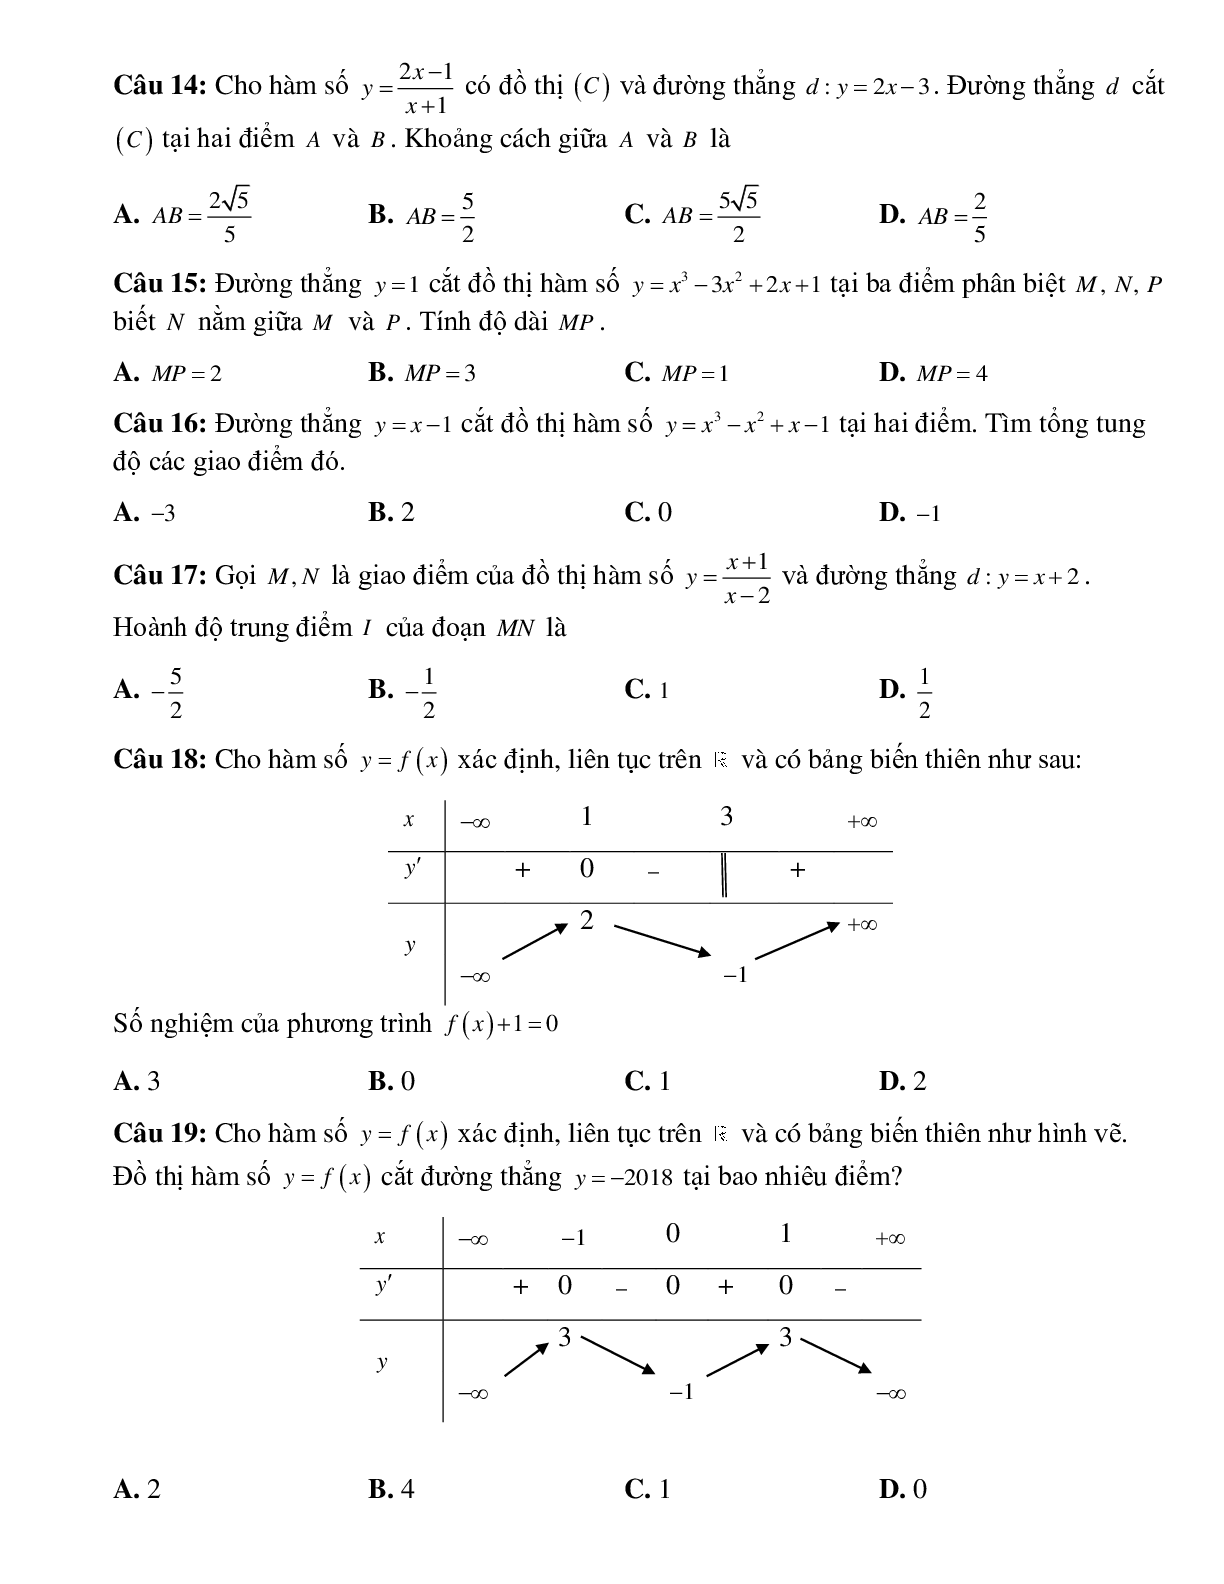 Biến luận số nghiệm của phương trình bằng đồ thị (trang 3)